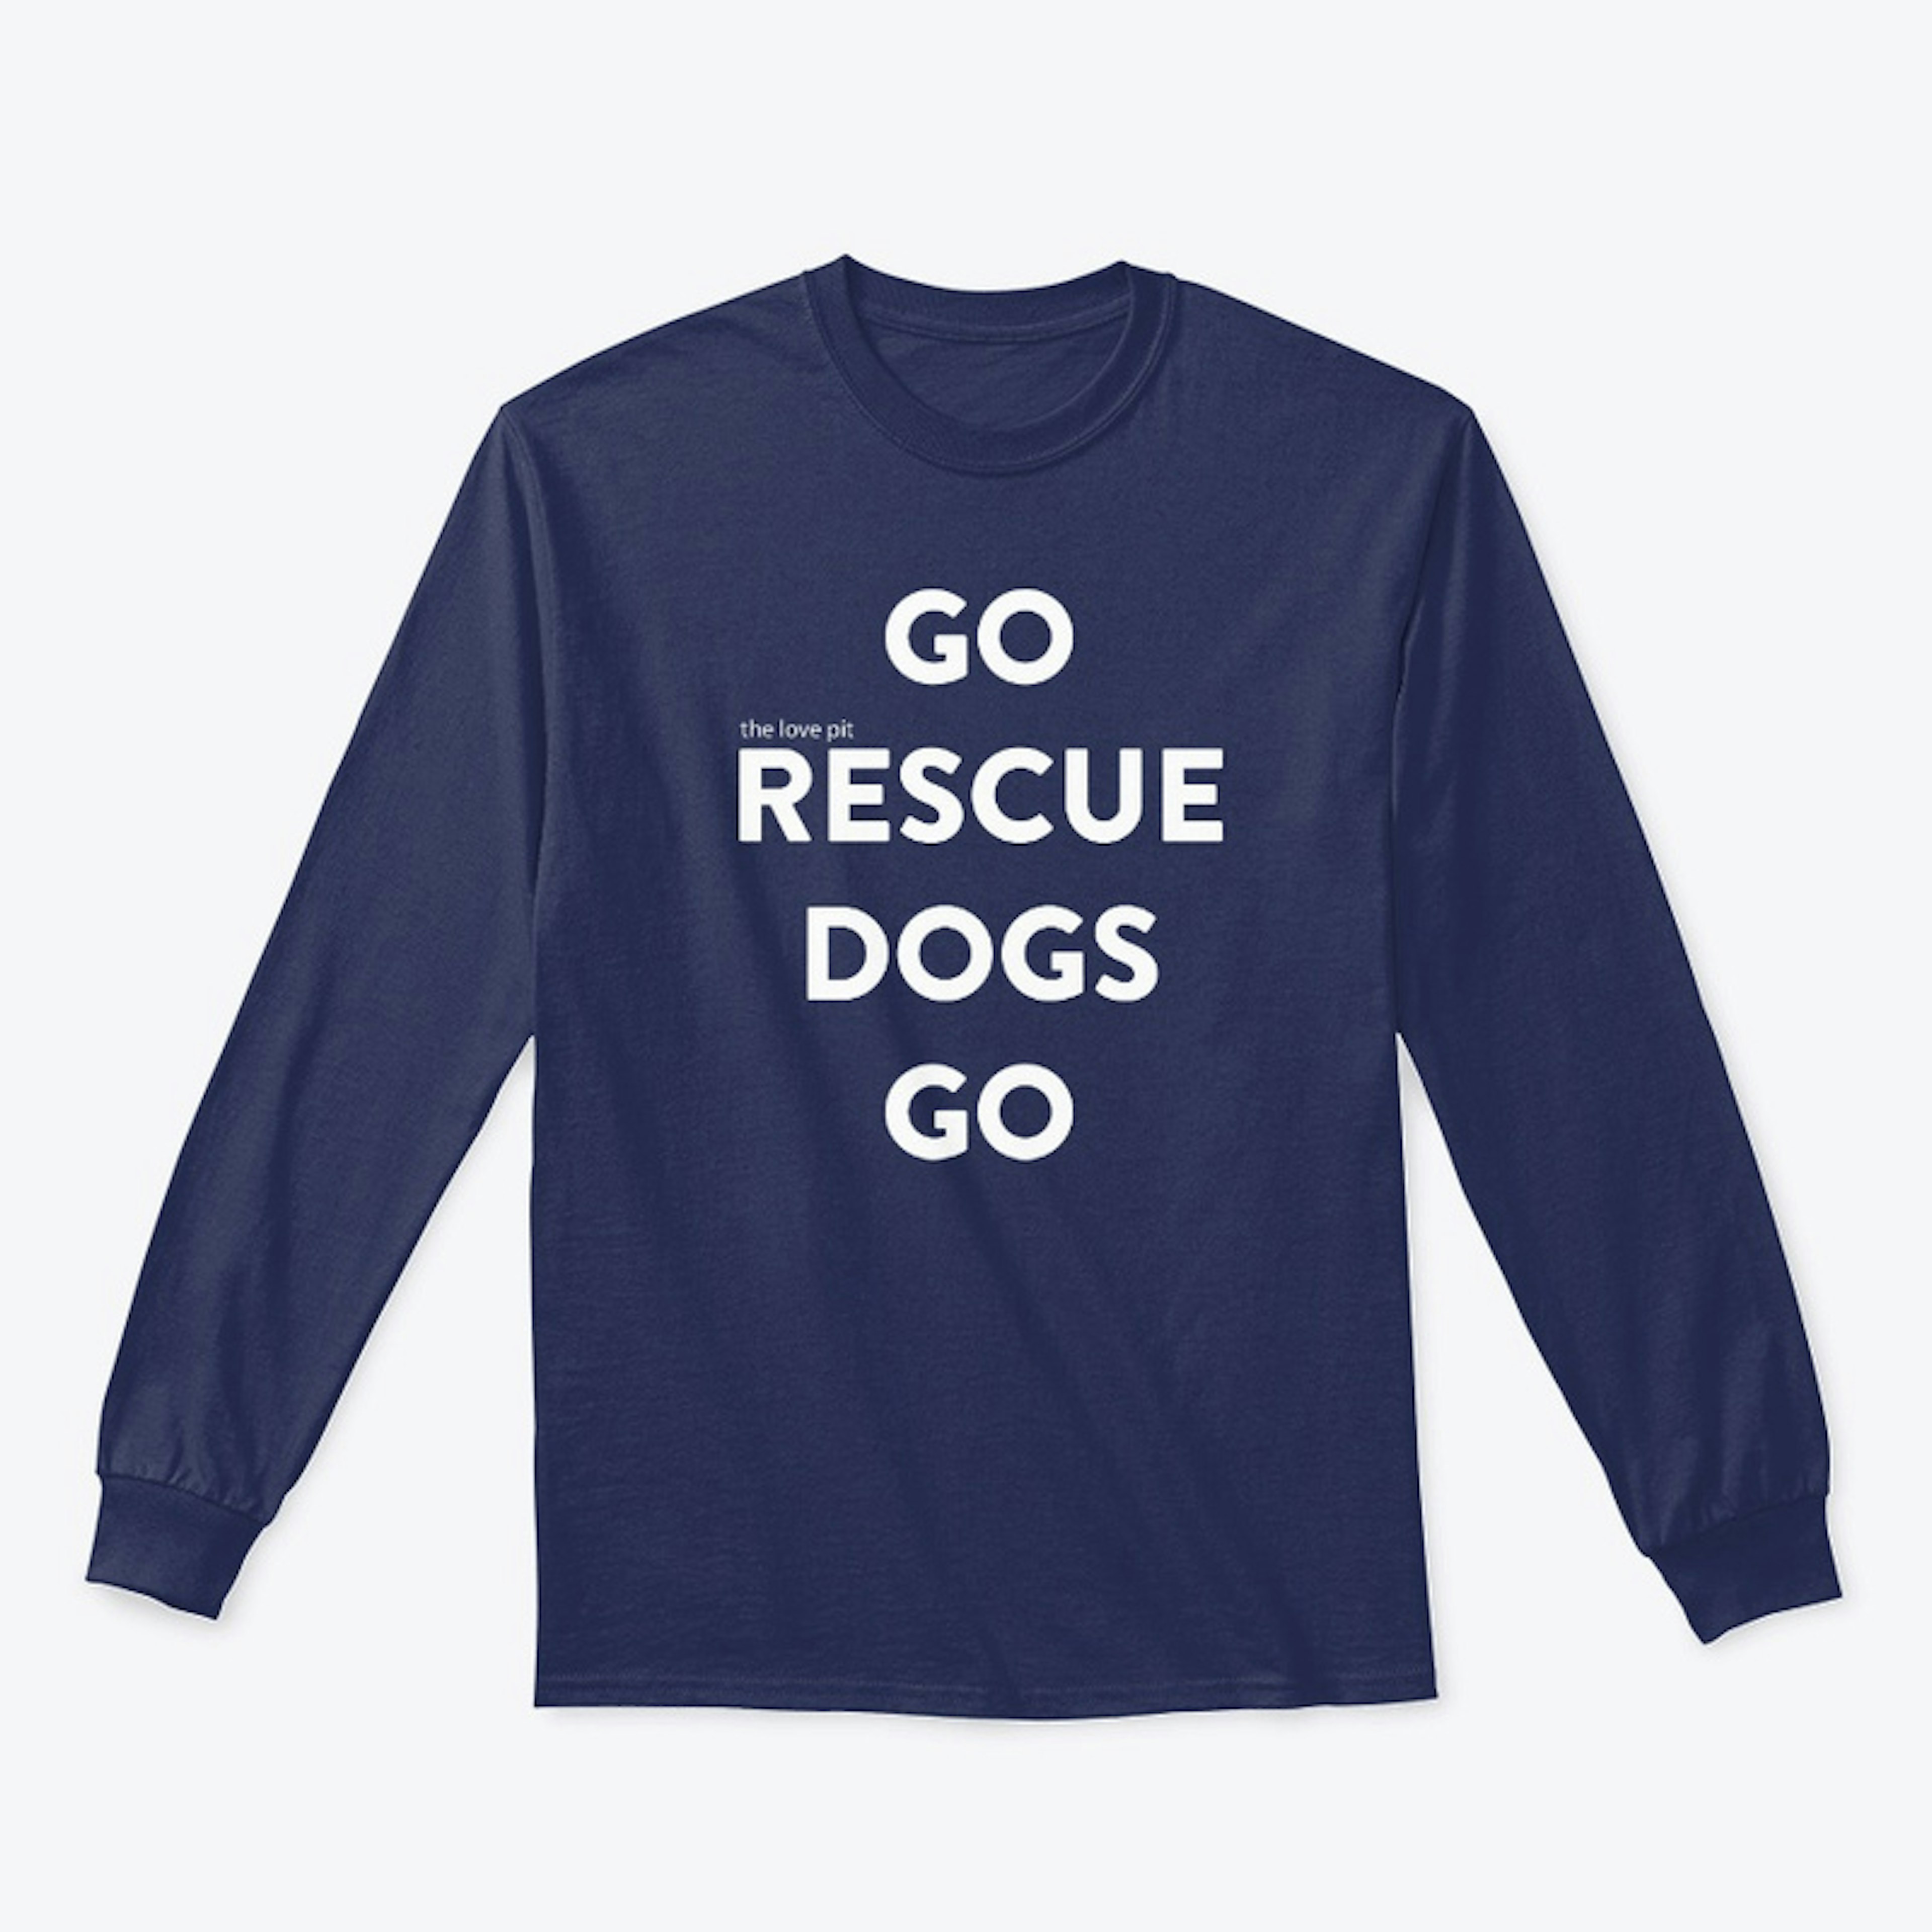 Go Rescue Dogs Go!